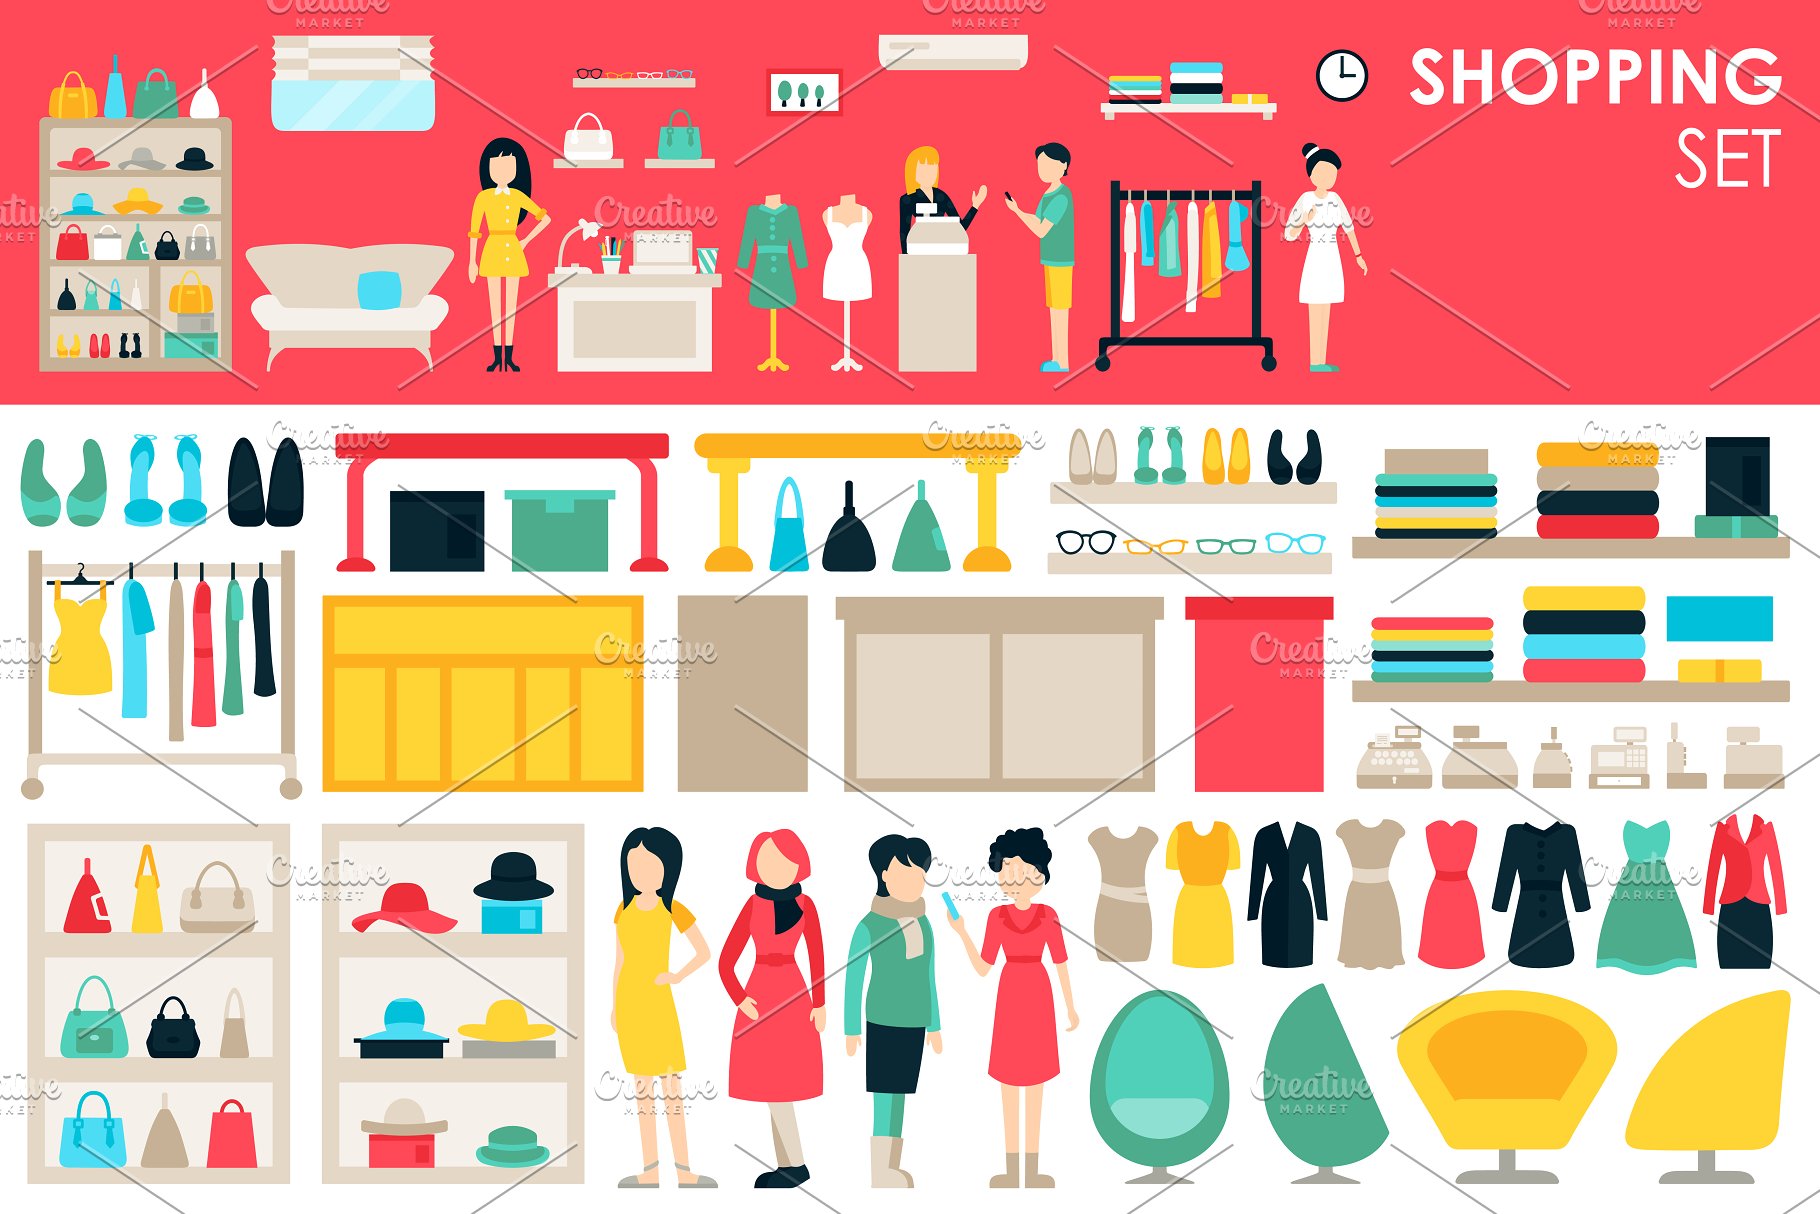 扁平风格购物设计元素合集 Shopping Flat Objects 9 collections插图(4)